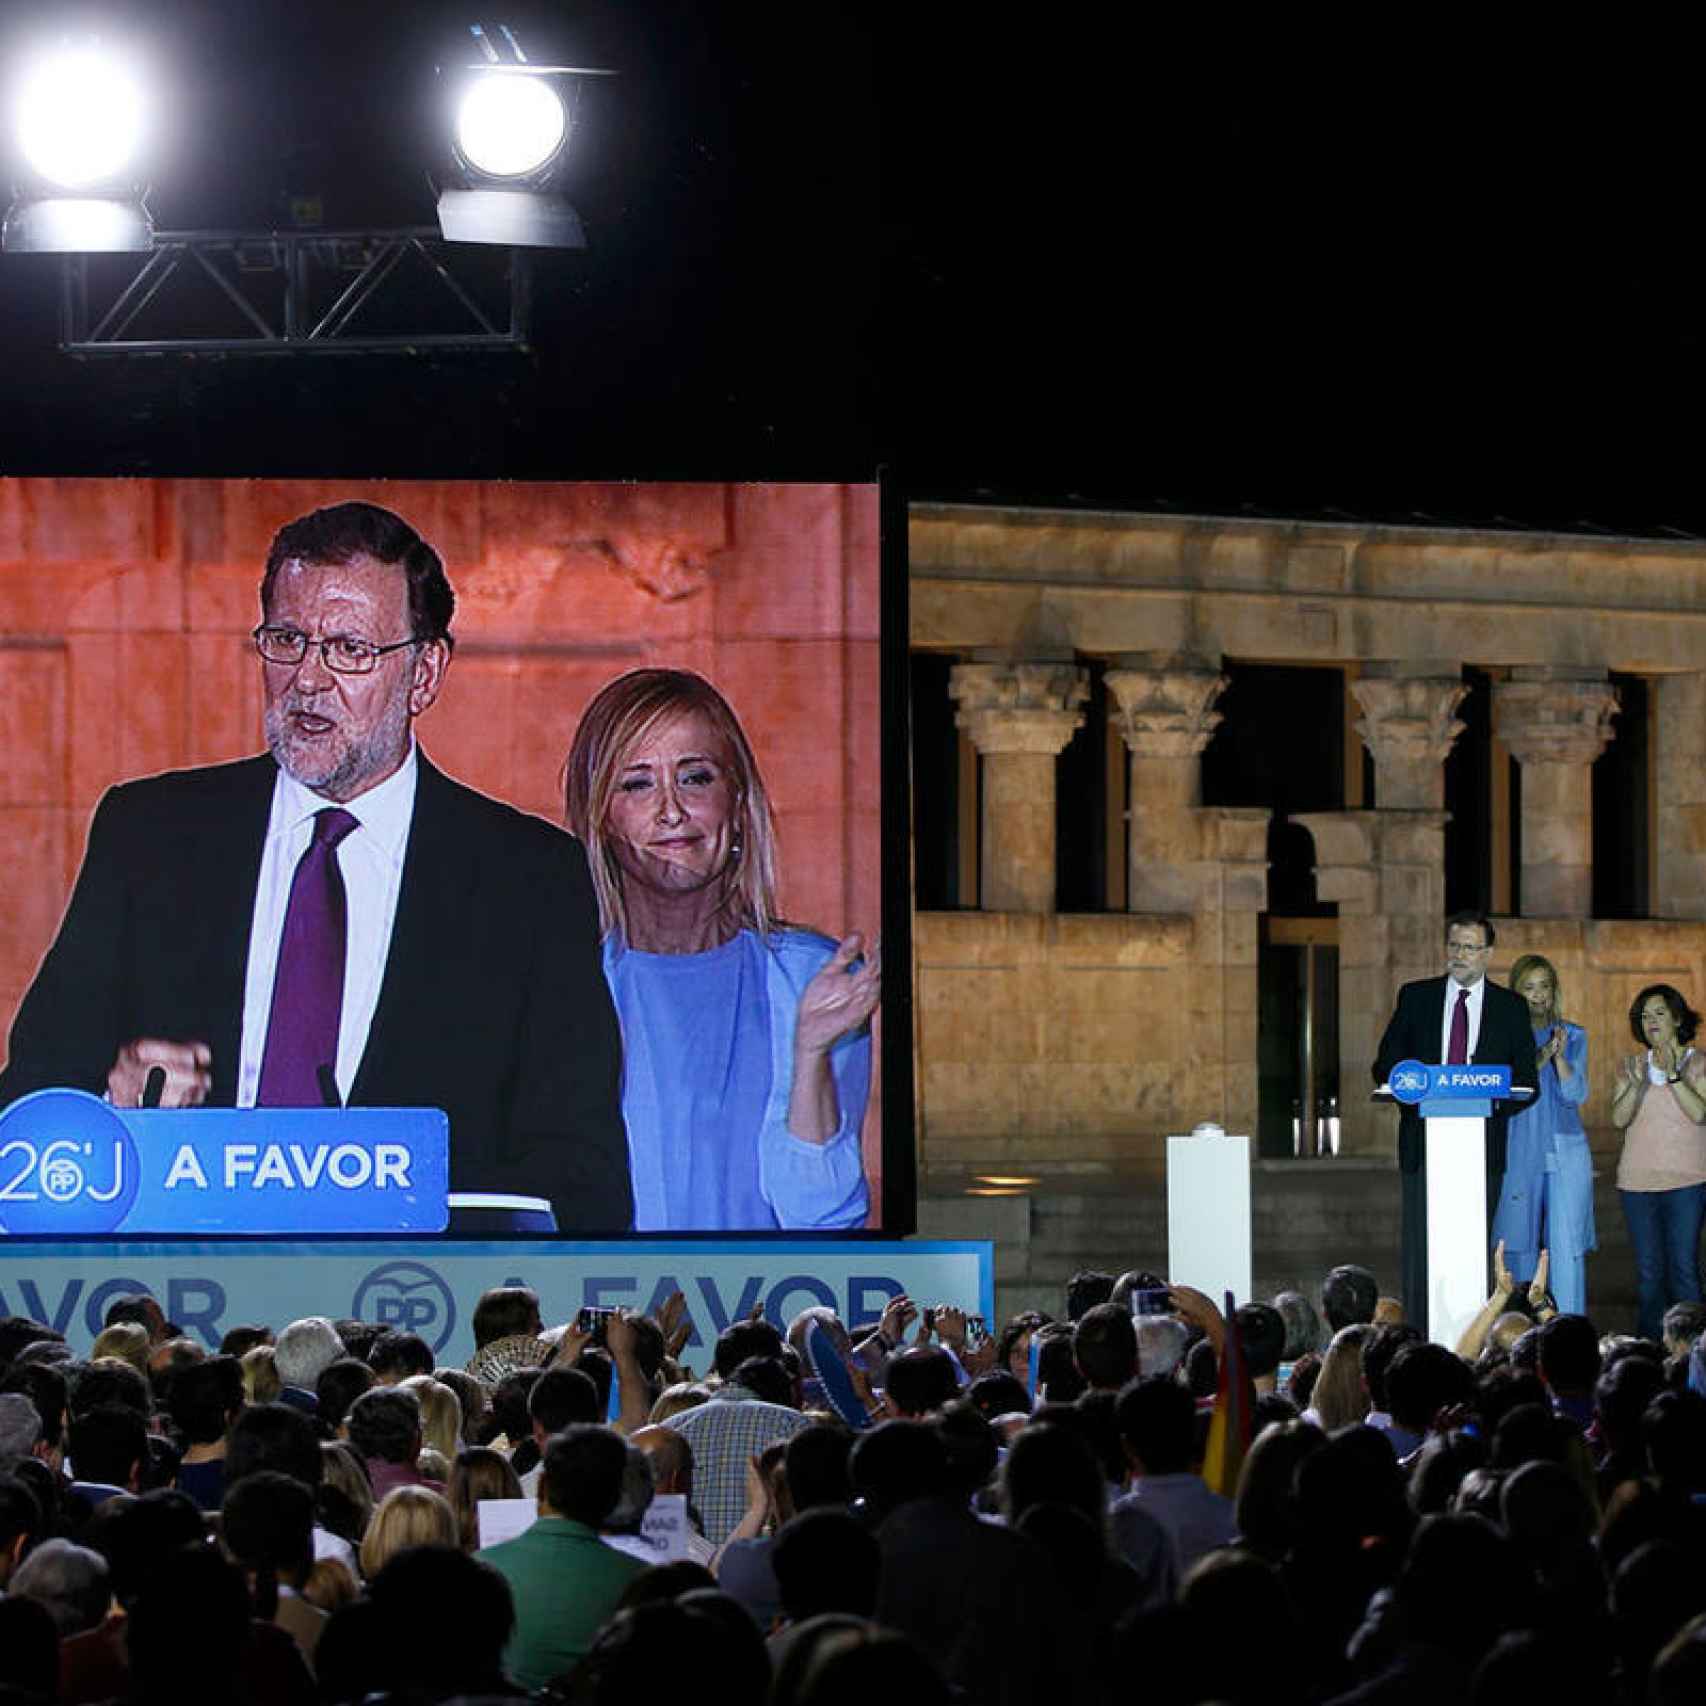 Un momento de la intervención de Rajoy en el arranque de campaña en el Templo de Debod